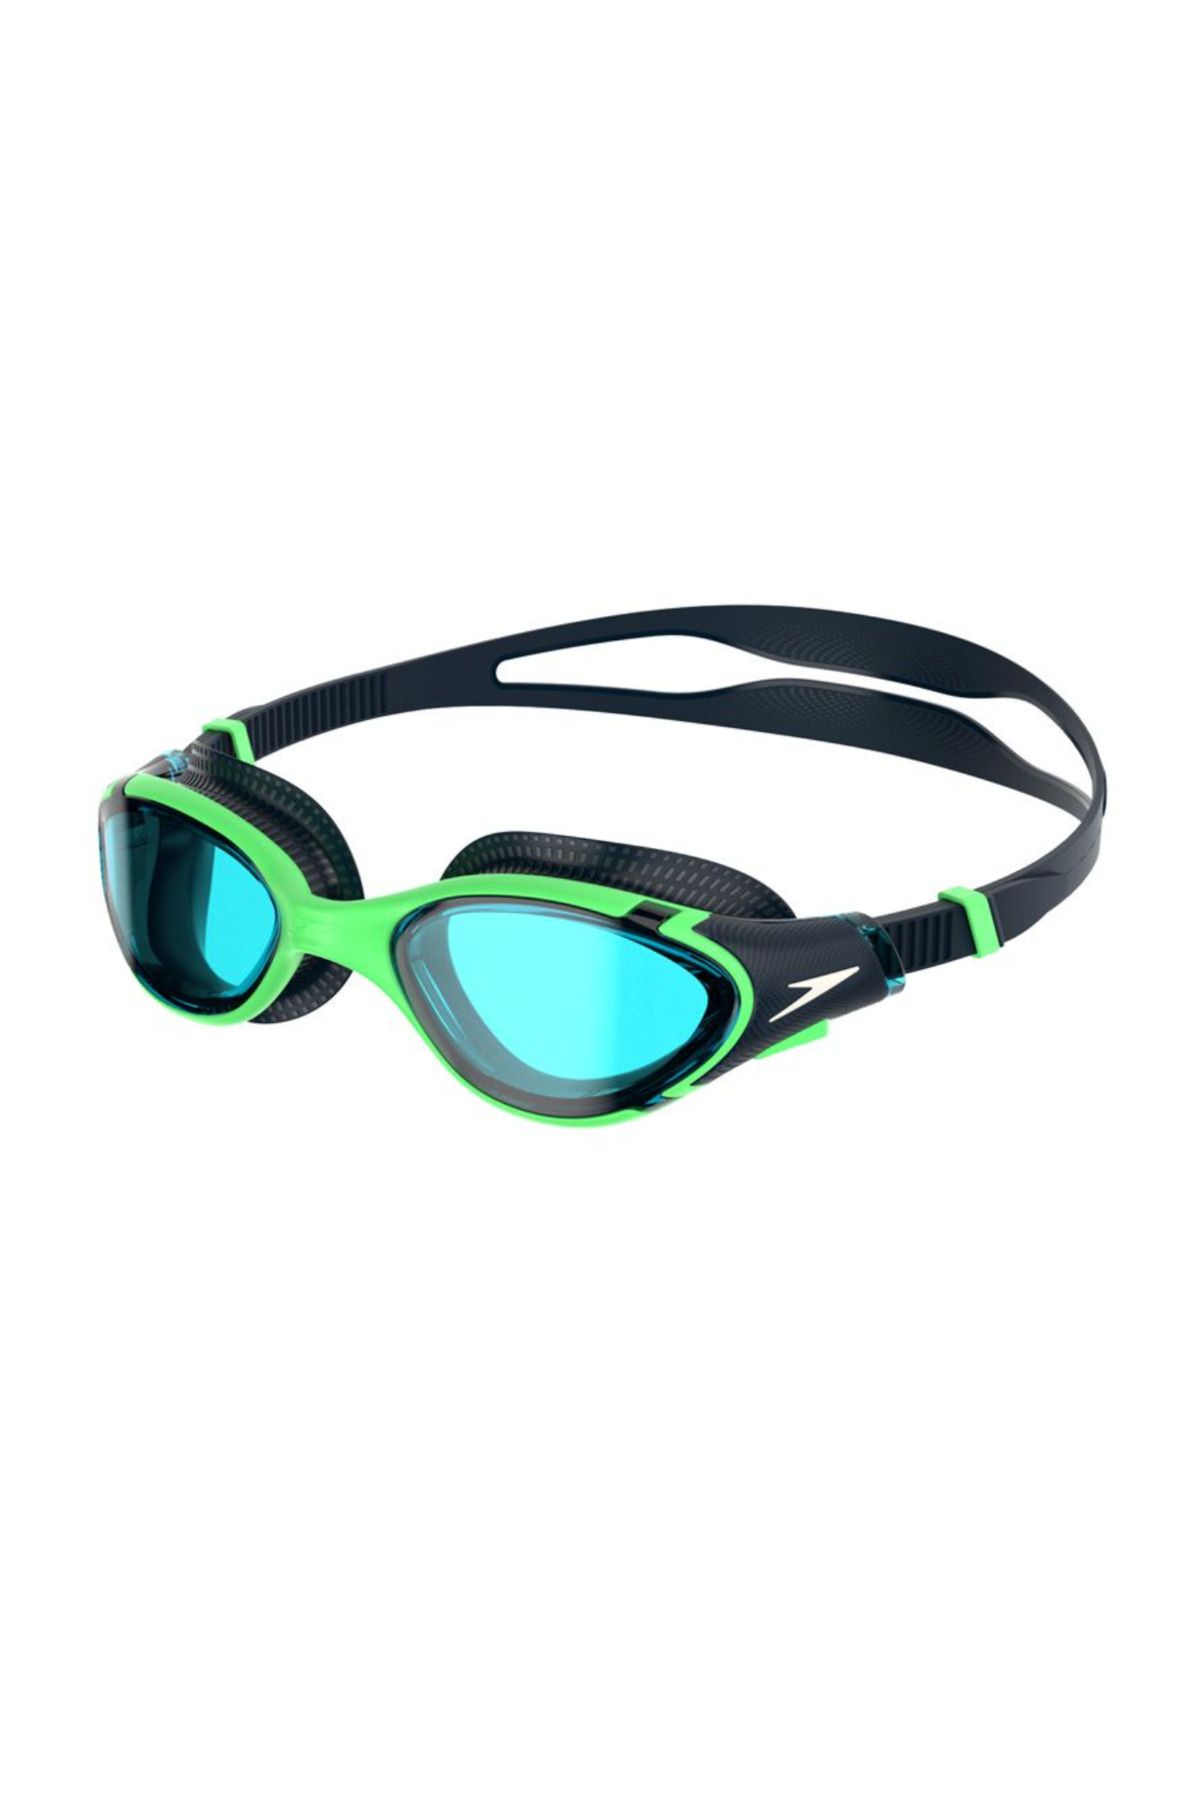 SPEEDO Biofuse 2.0 Gözlük - Yeşil/Mavi 8-00233216739